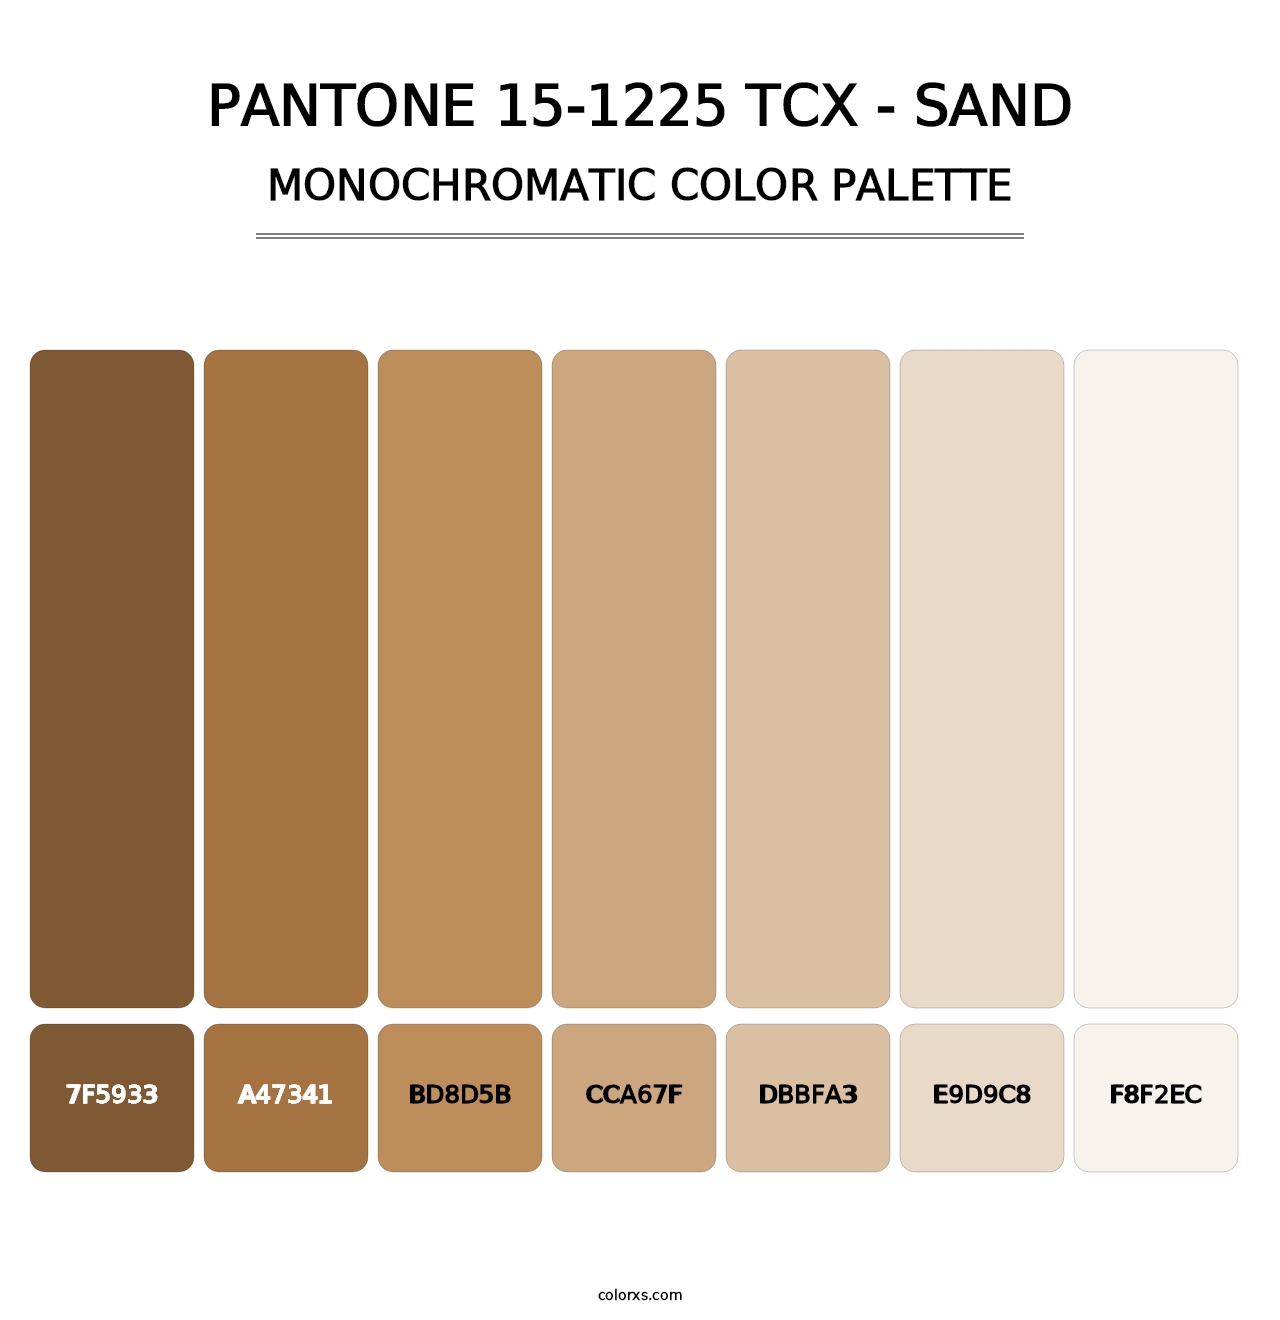 PANTONE 15-1225 TCX - Sand - Monochromatic Color Palette